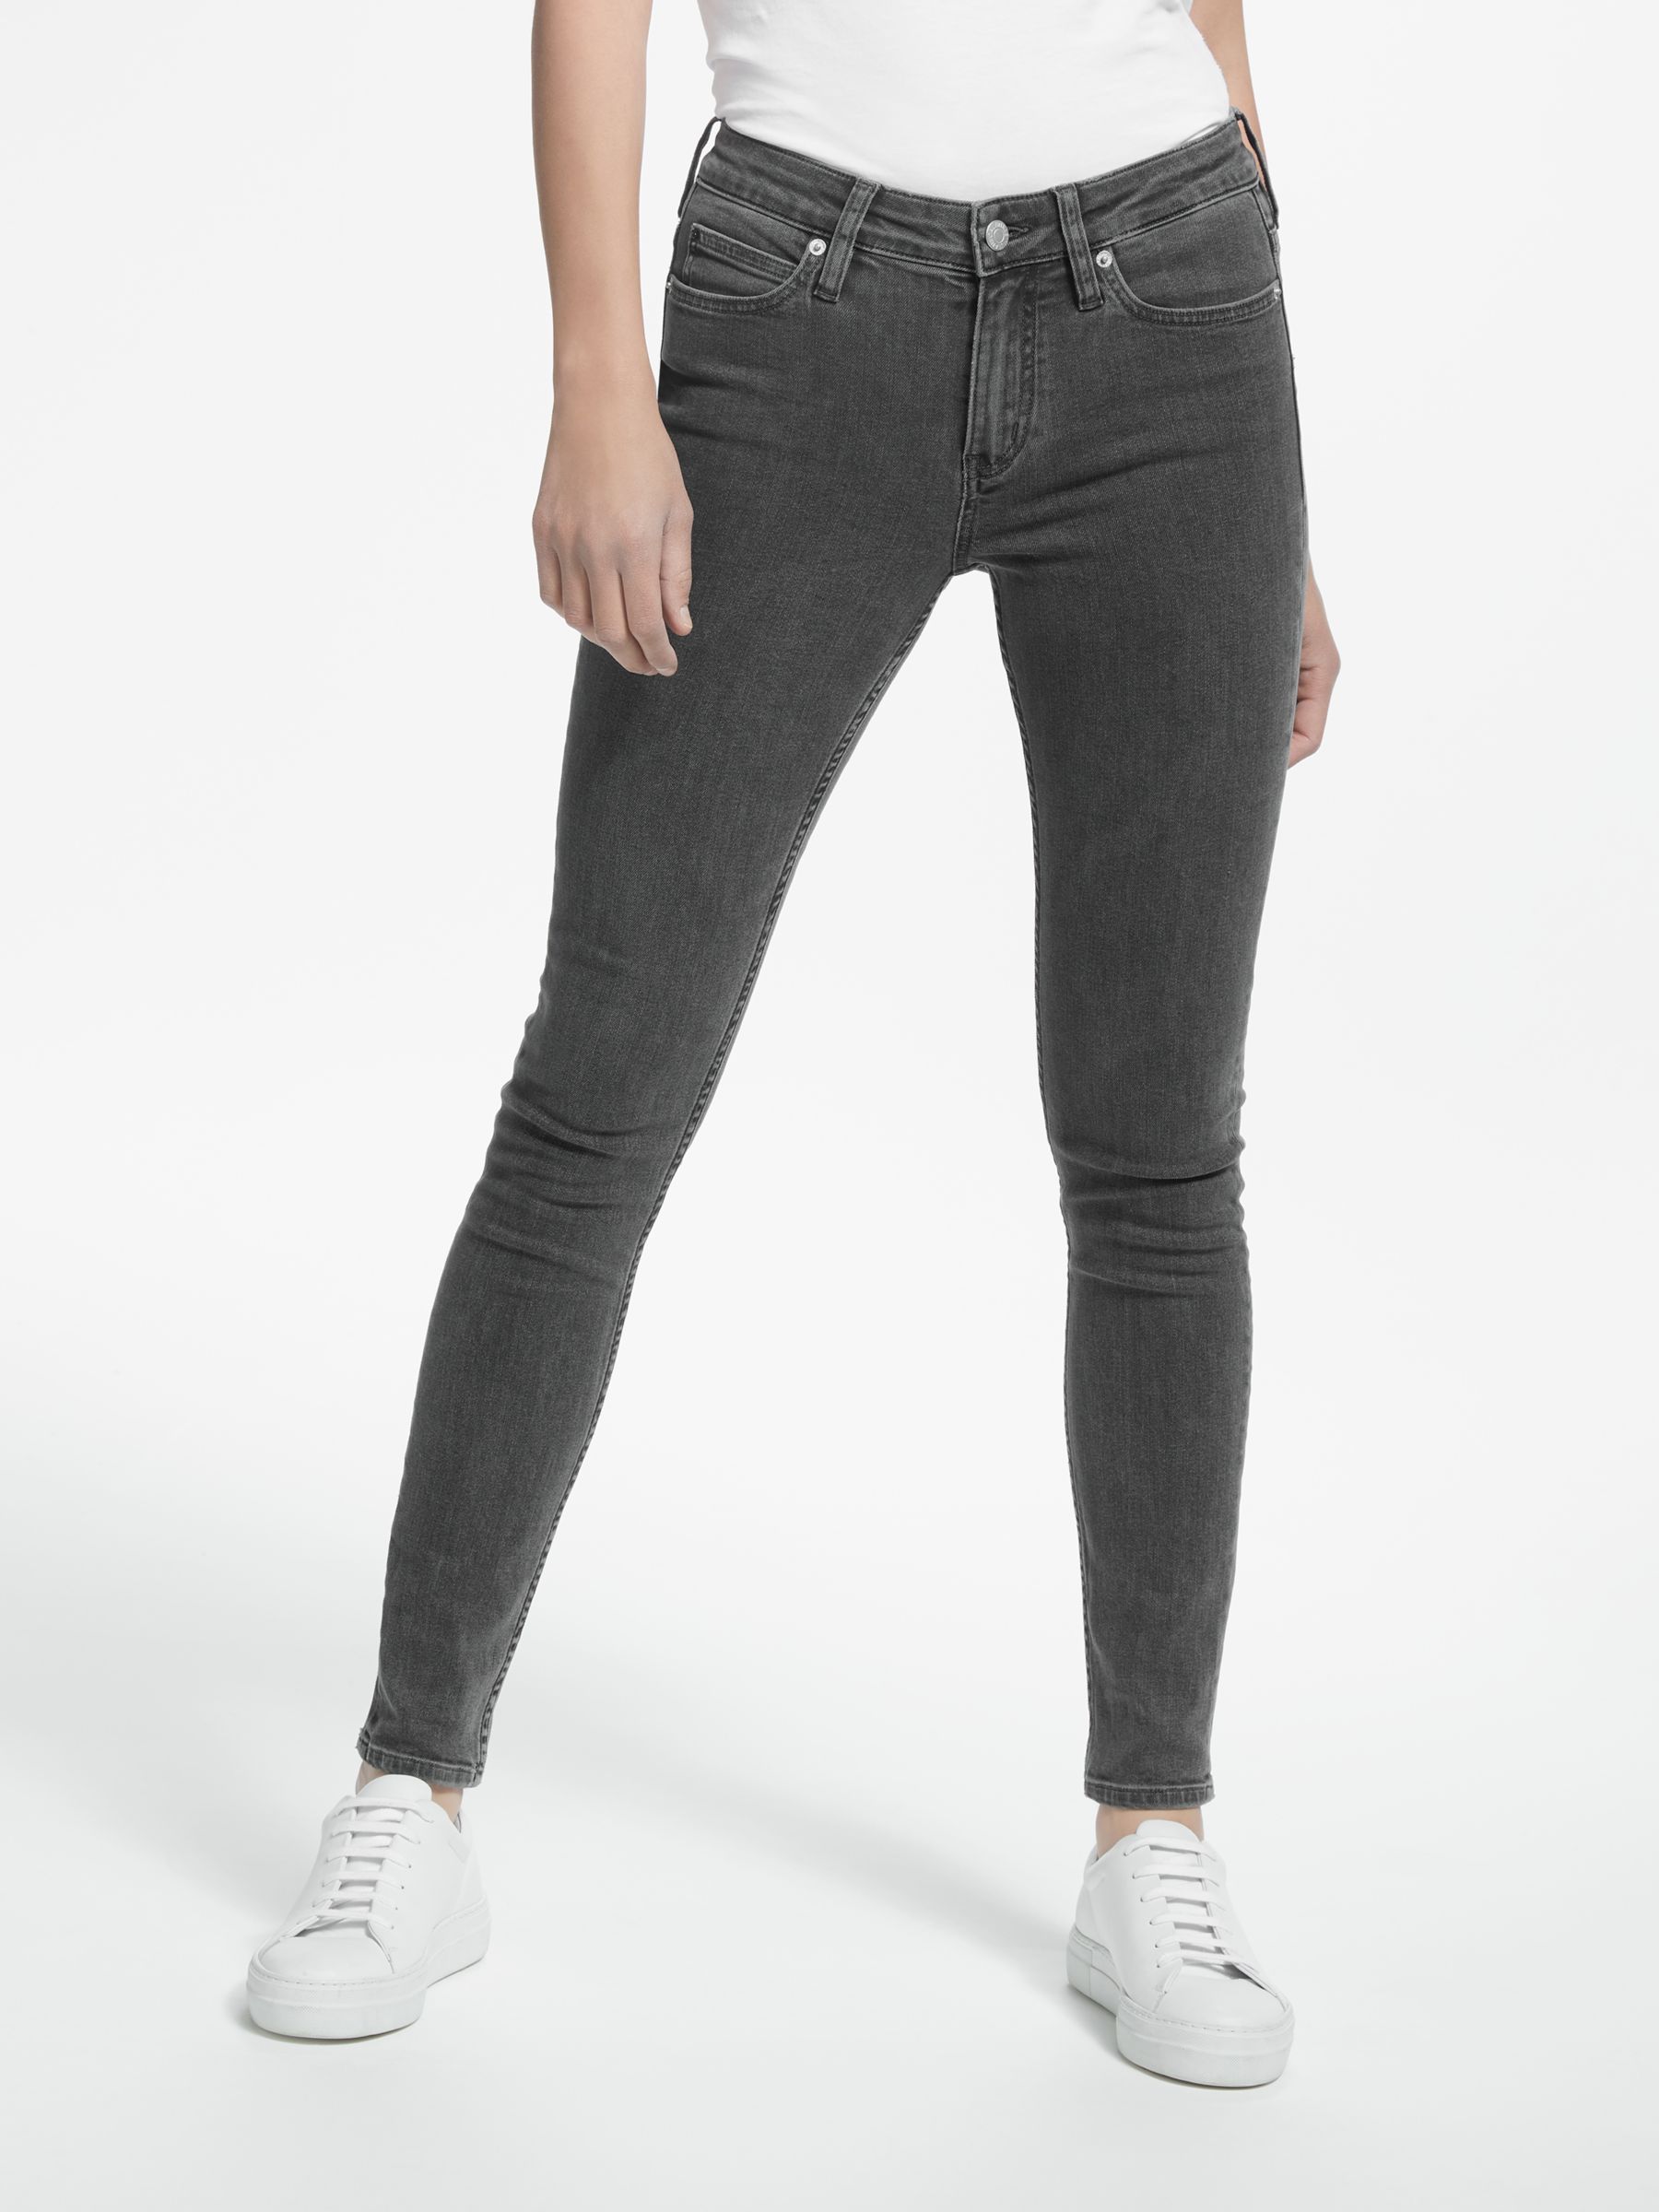 calvin klein grey jeans